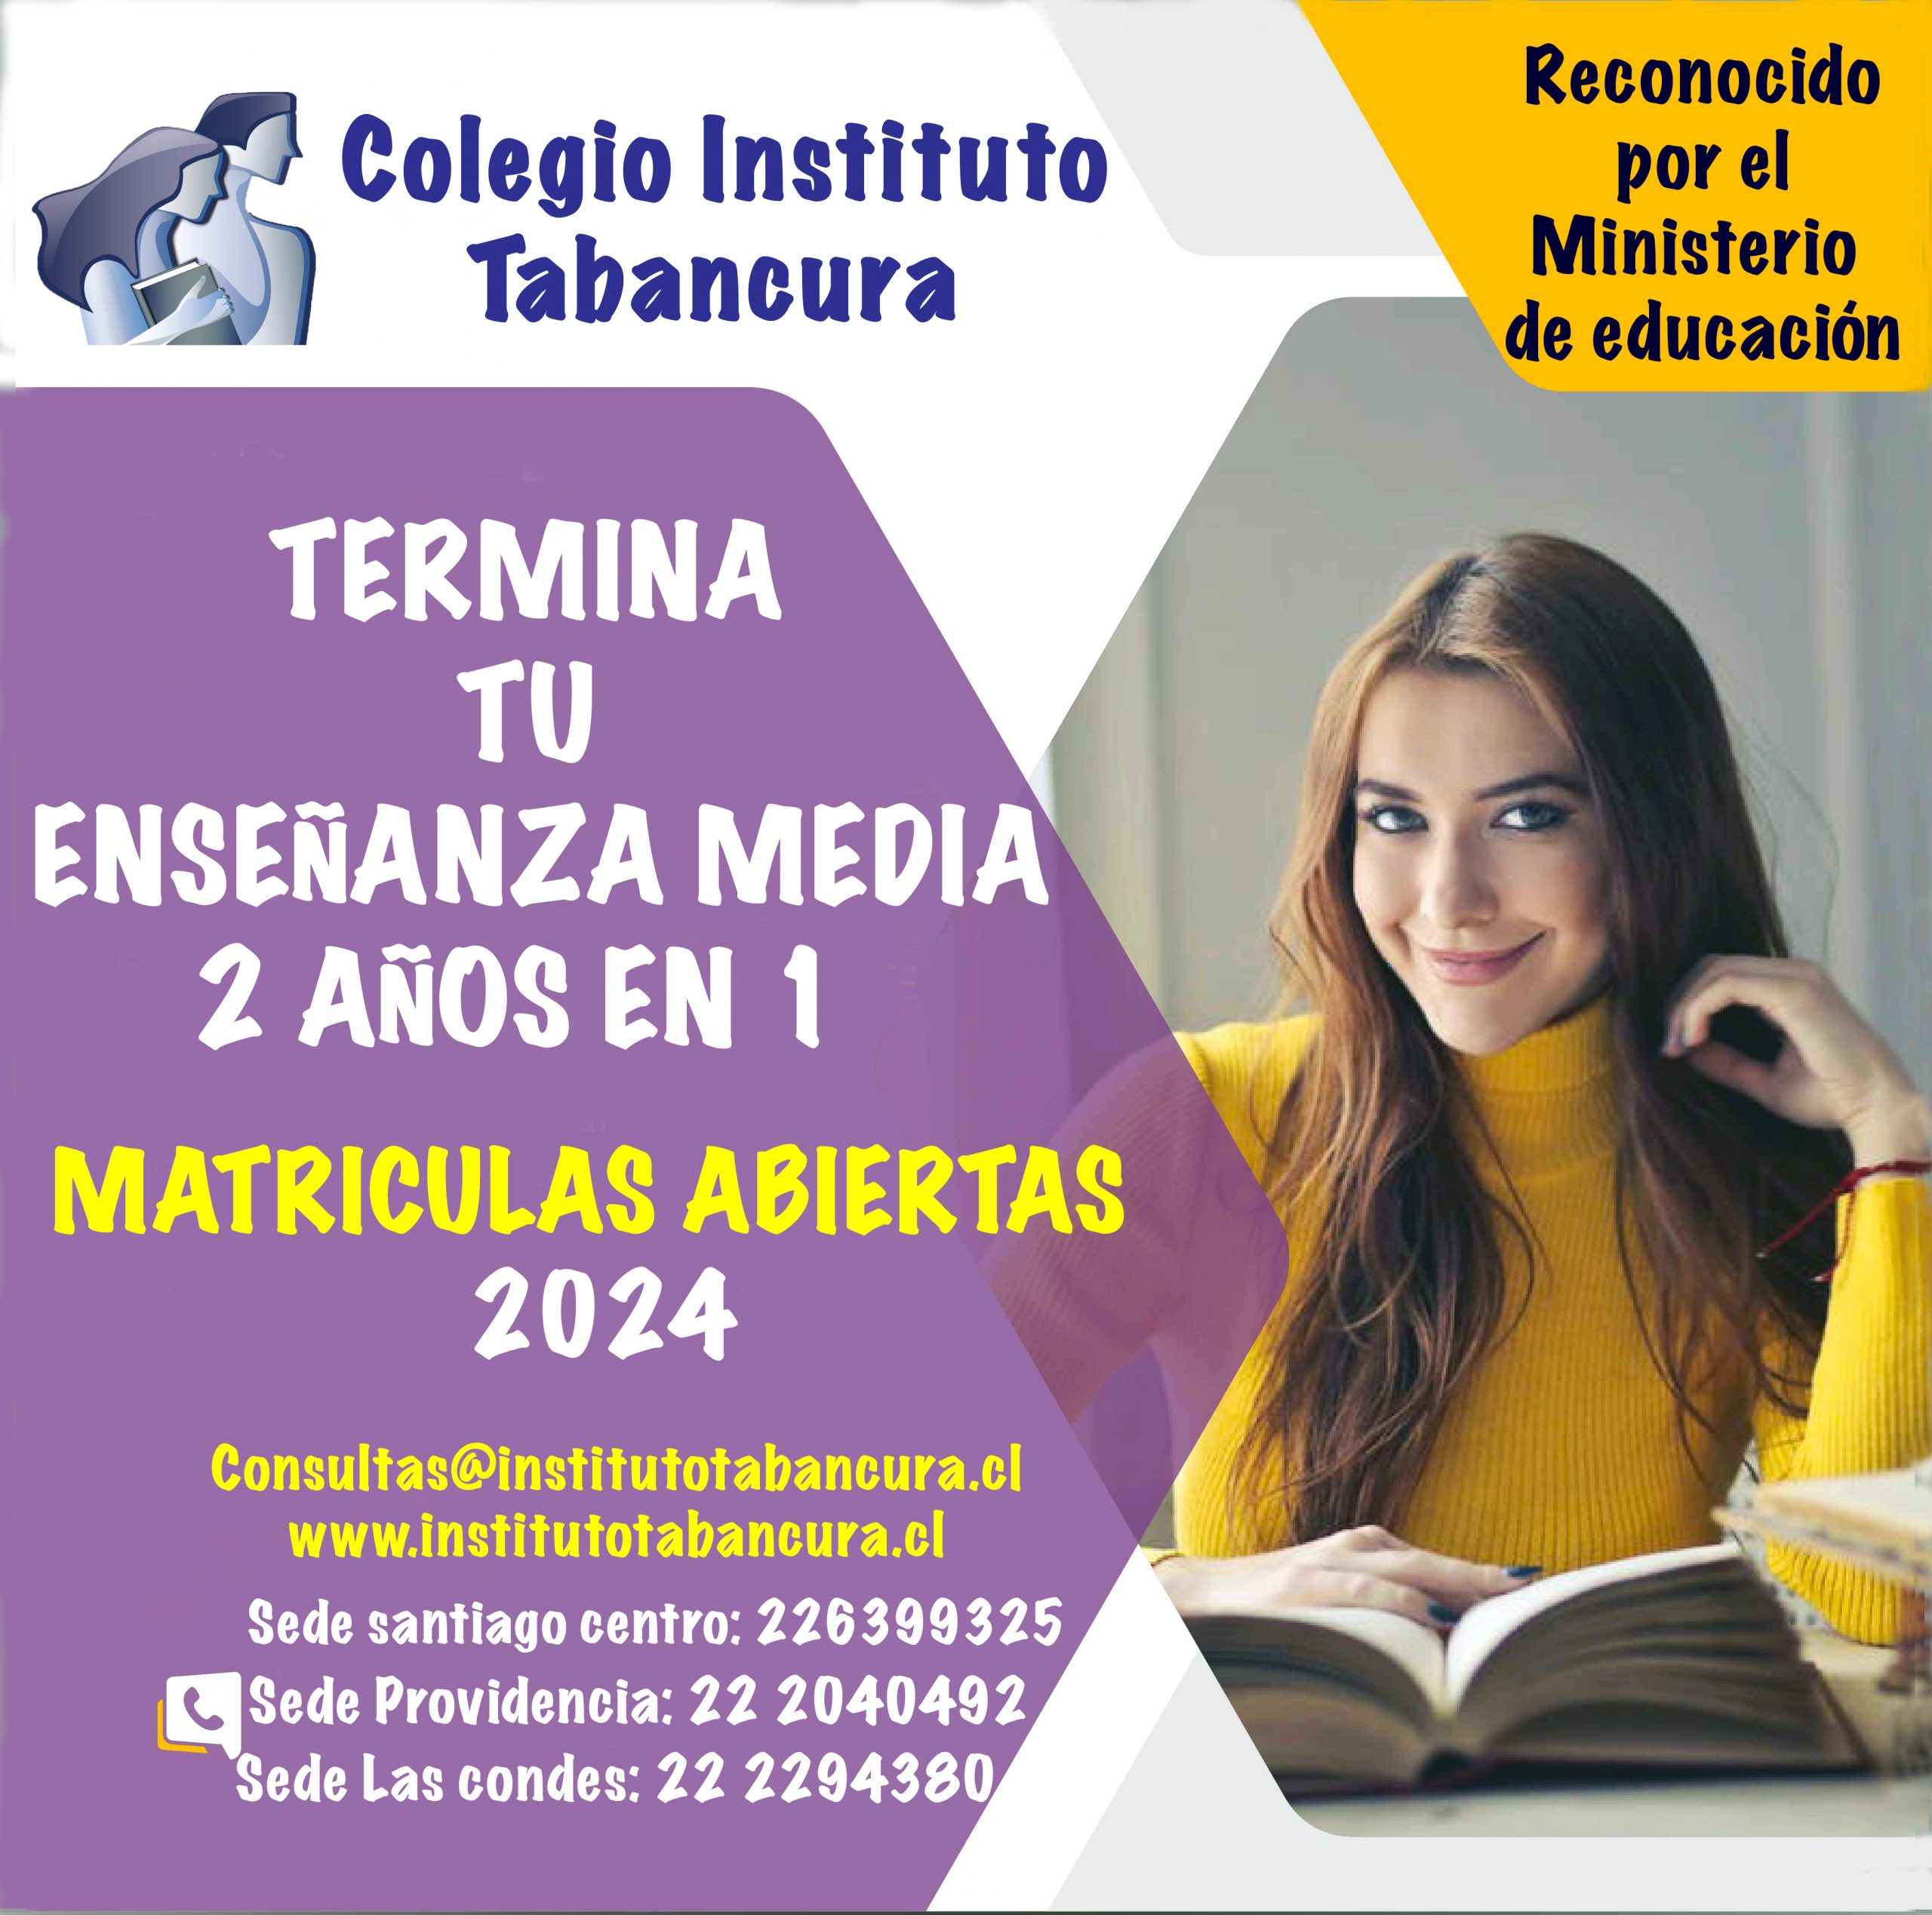 Colegio Instituto Tabancura